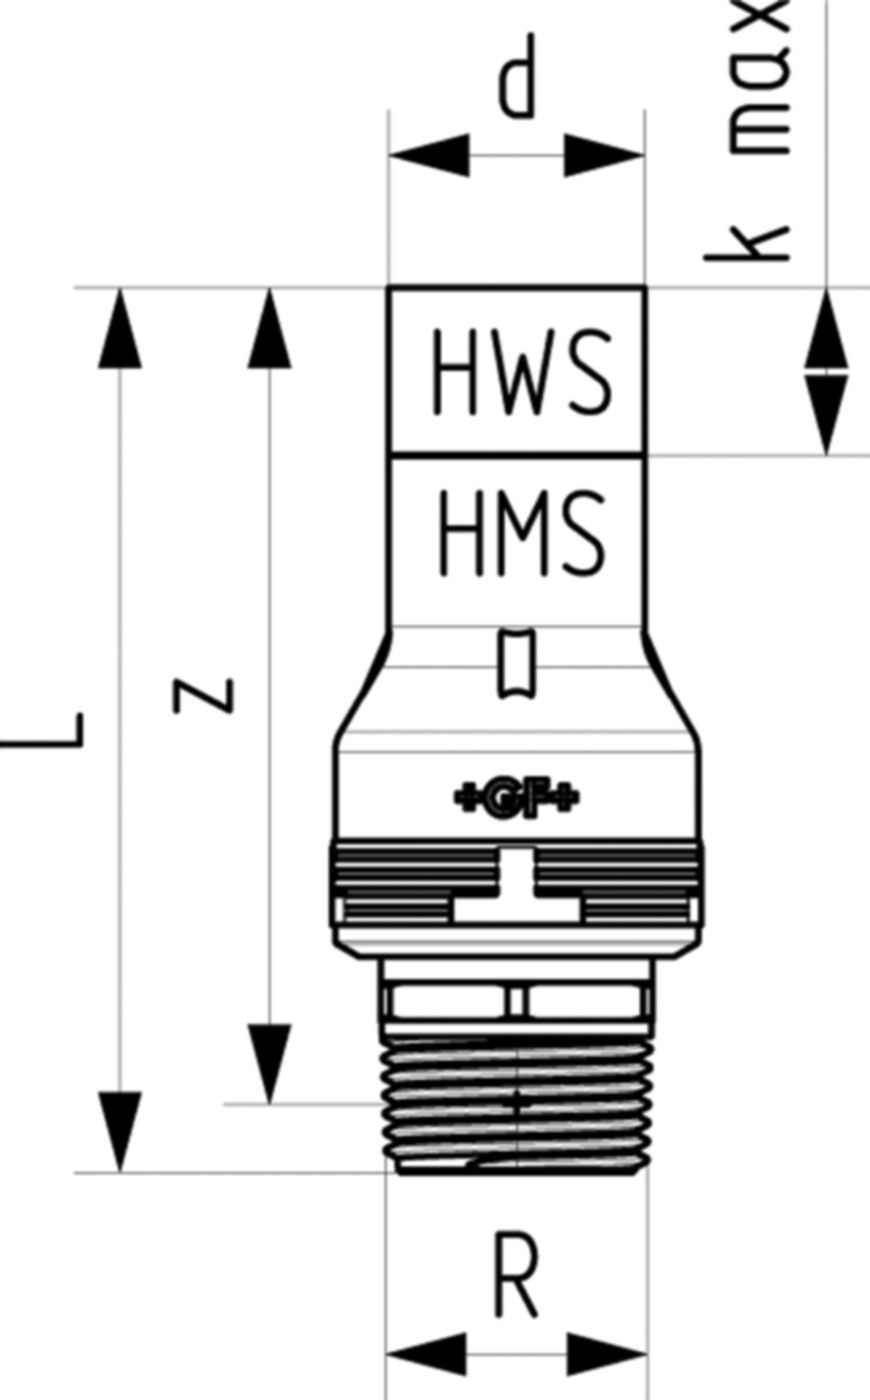 Übergang mit Aussengewinde 6214 25mm - 1" 761 069 670 (761 069 389) - GF Instaflex-HWS-Schweisssystem